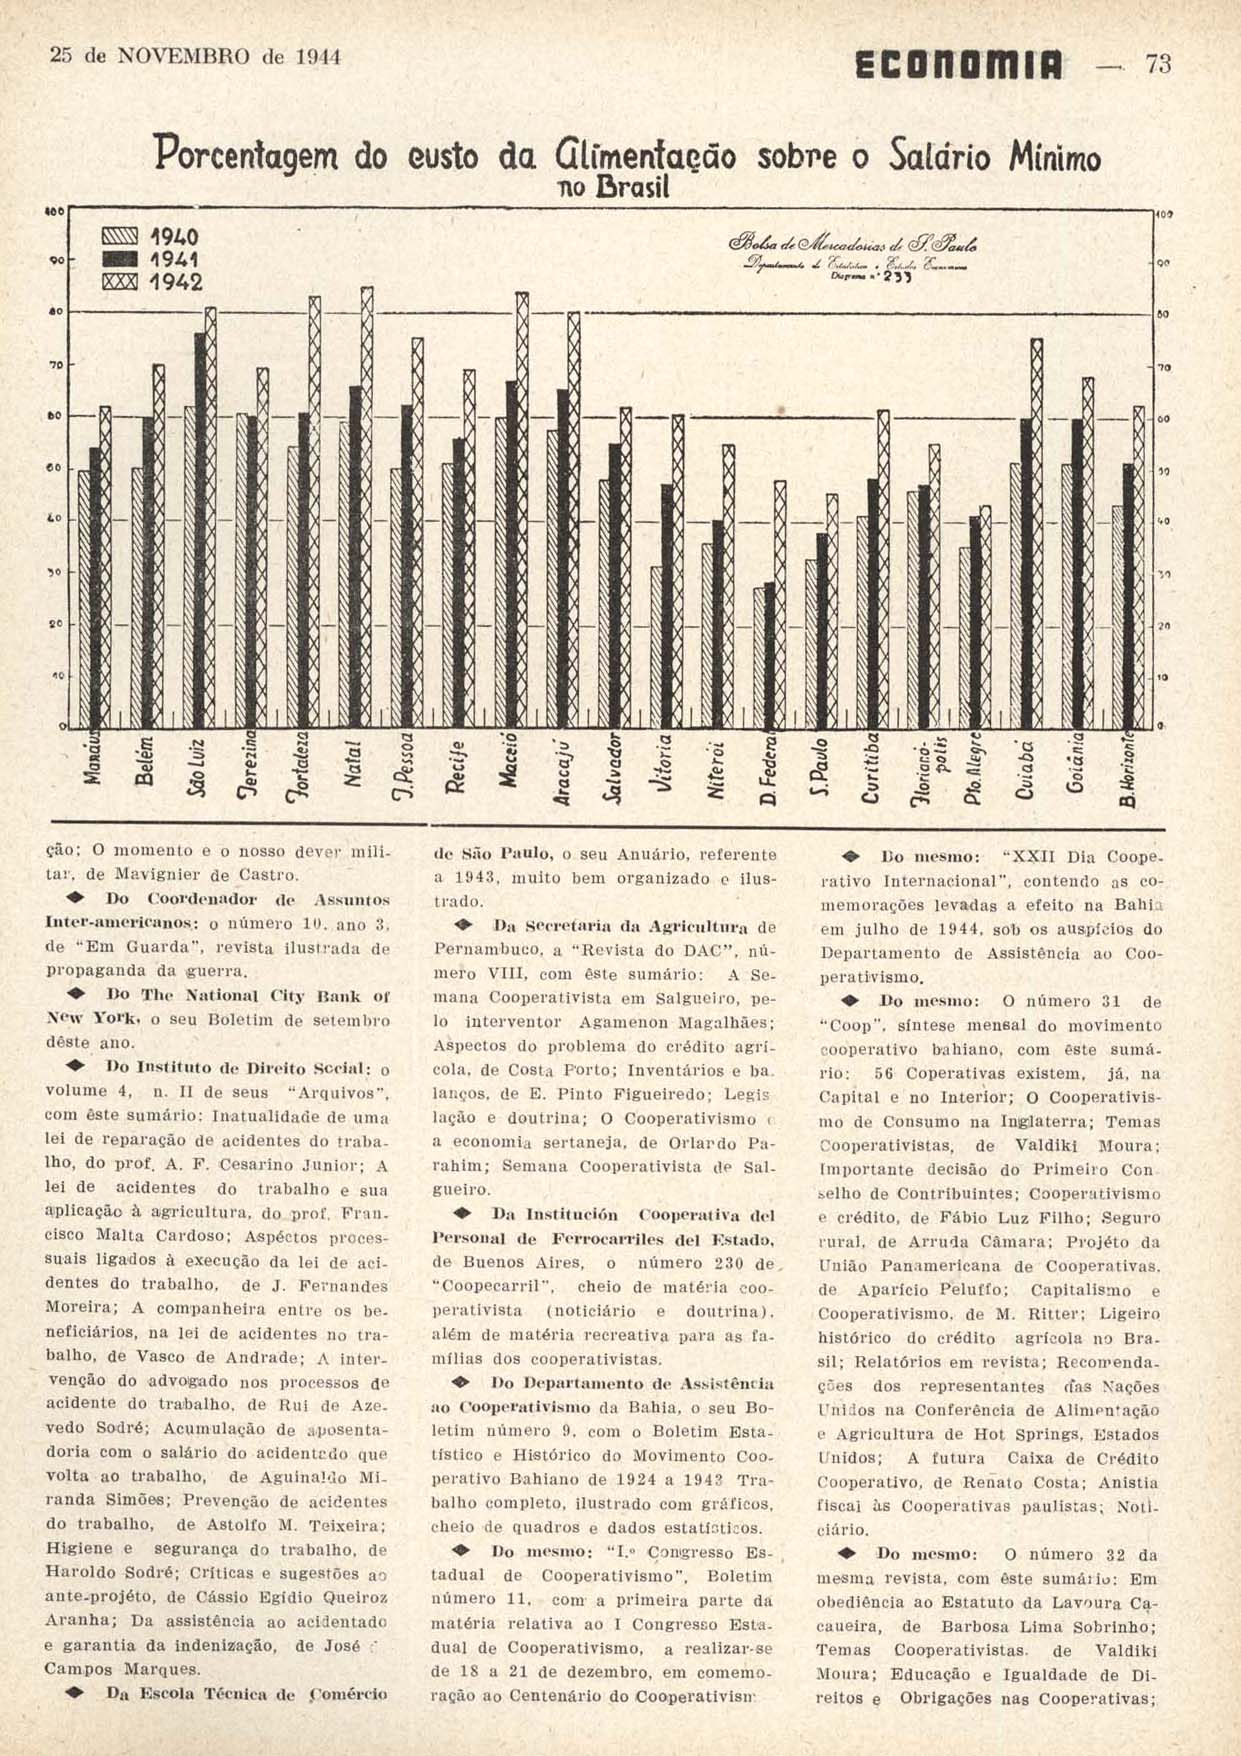 PORCENTAGEM do custo da alimentação sobre o salário mínimo no Brasil. Economia, Rio de Janeiro, n. 66, p. 73, nov. 1944.